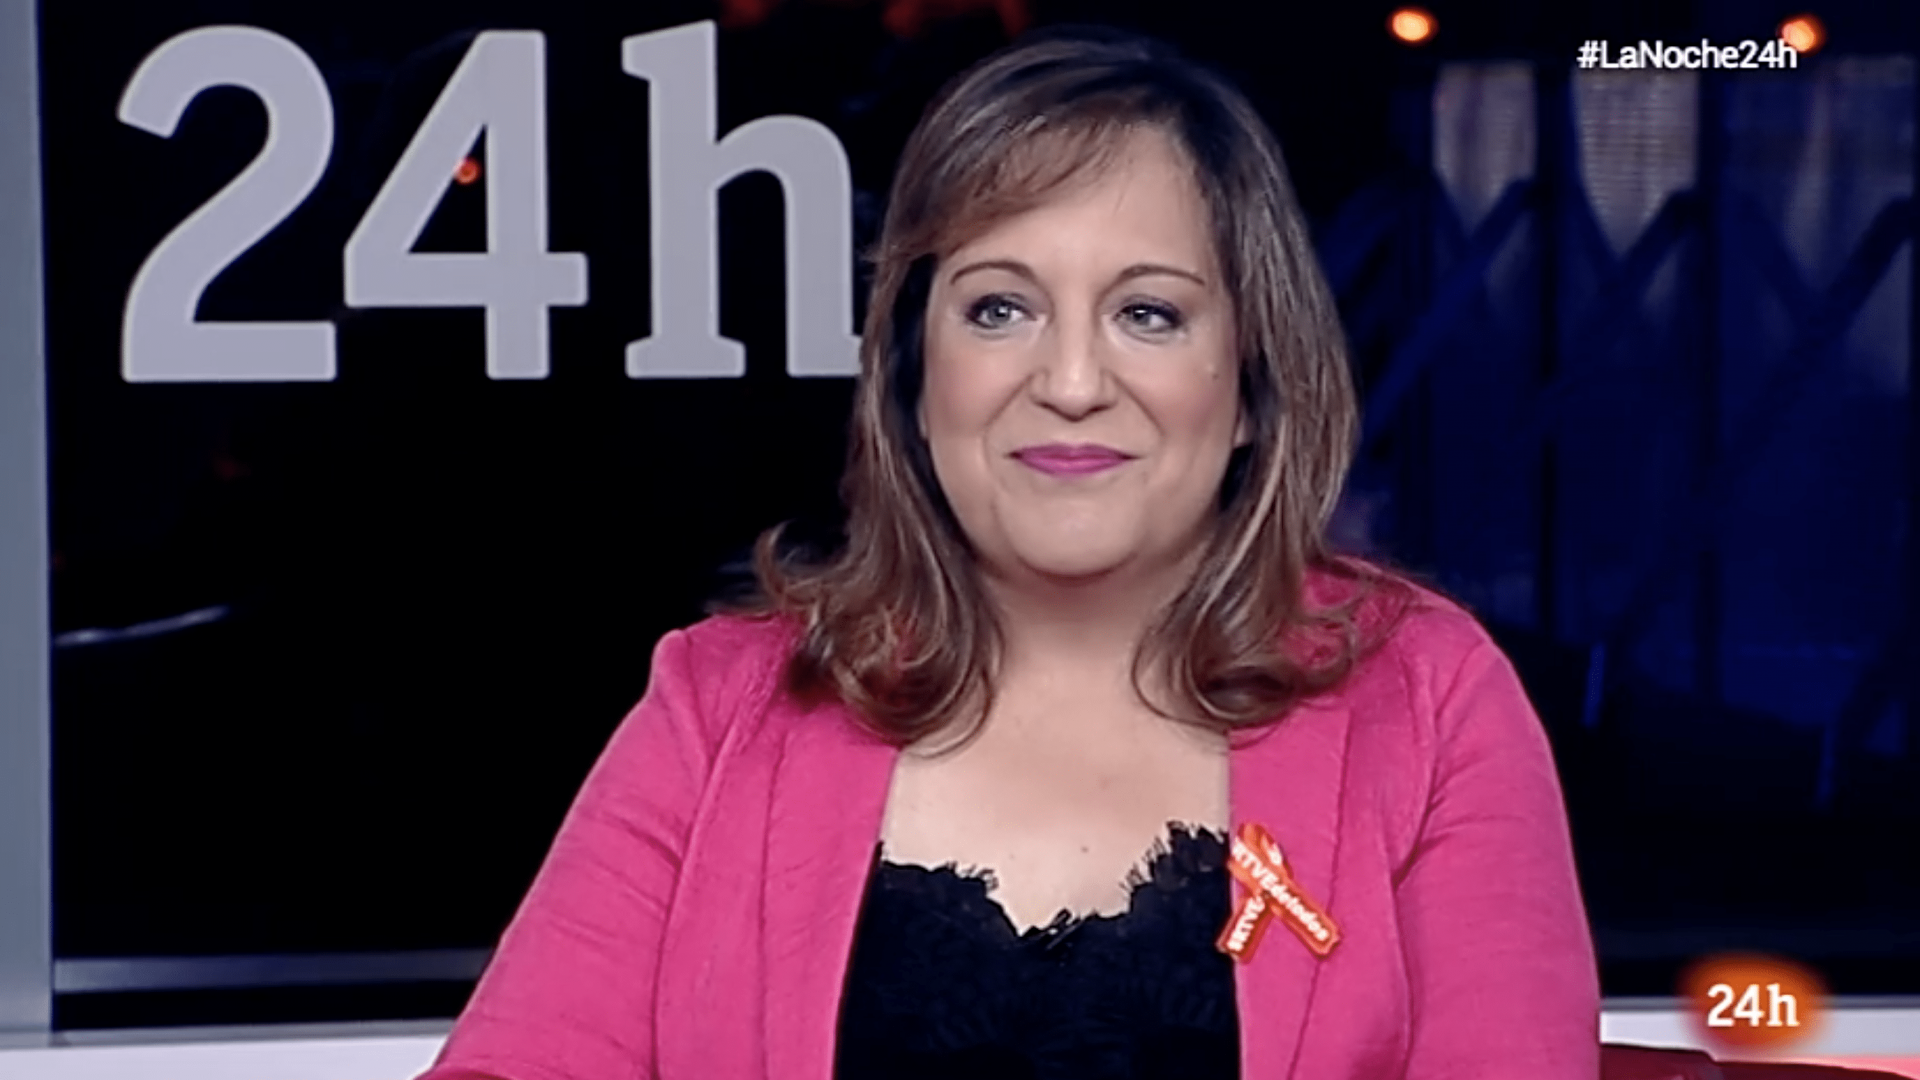 Iratxe García en La noche en 24 horas de RTVE el día 14 de junio de 2018